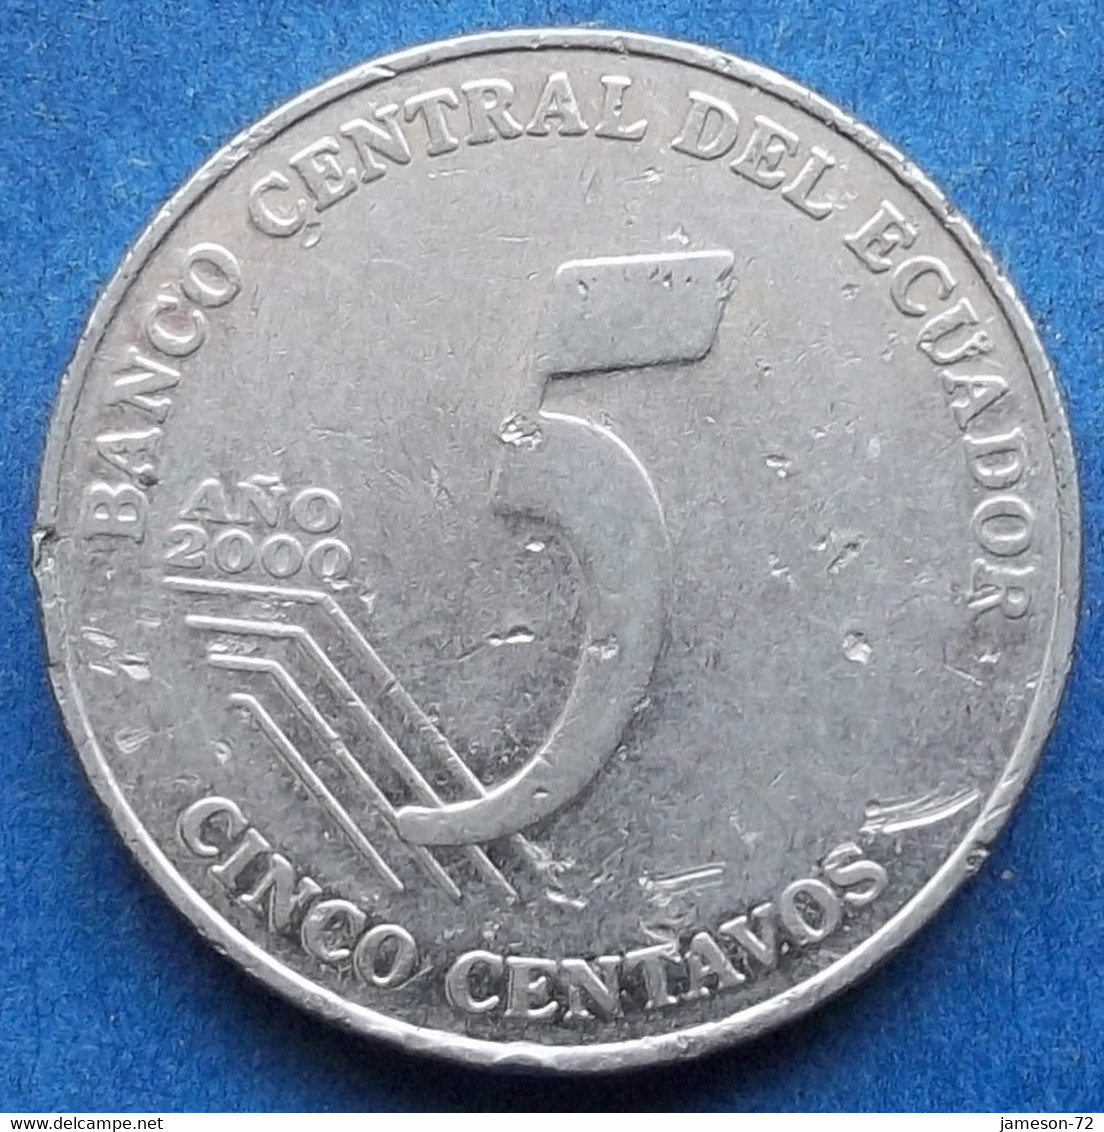 ECUADOR - 5 Centavos 2000 "Juan Montalvo" KM# 105 Reform Coinage (2000) - Edelweiss Coins - Ecuador